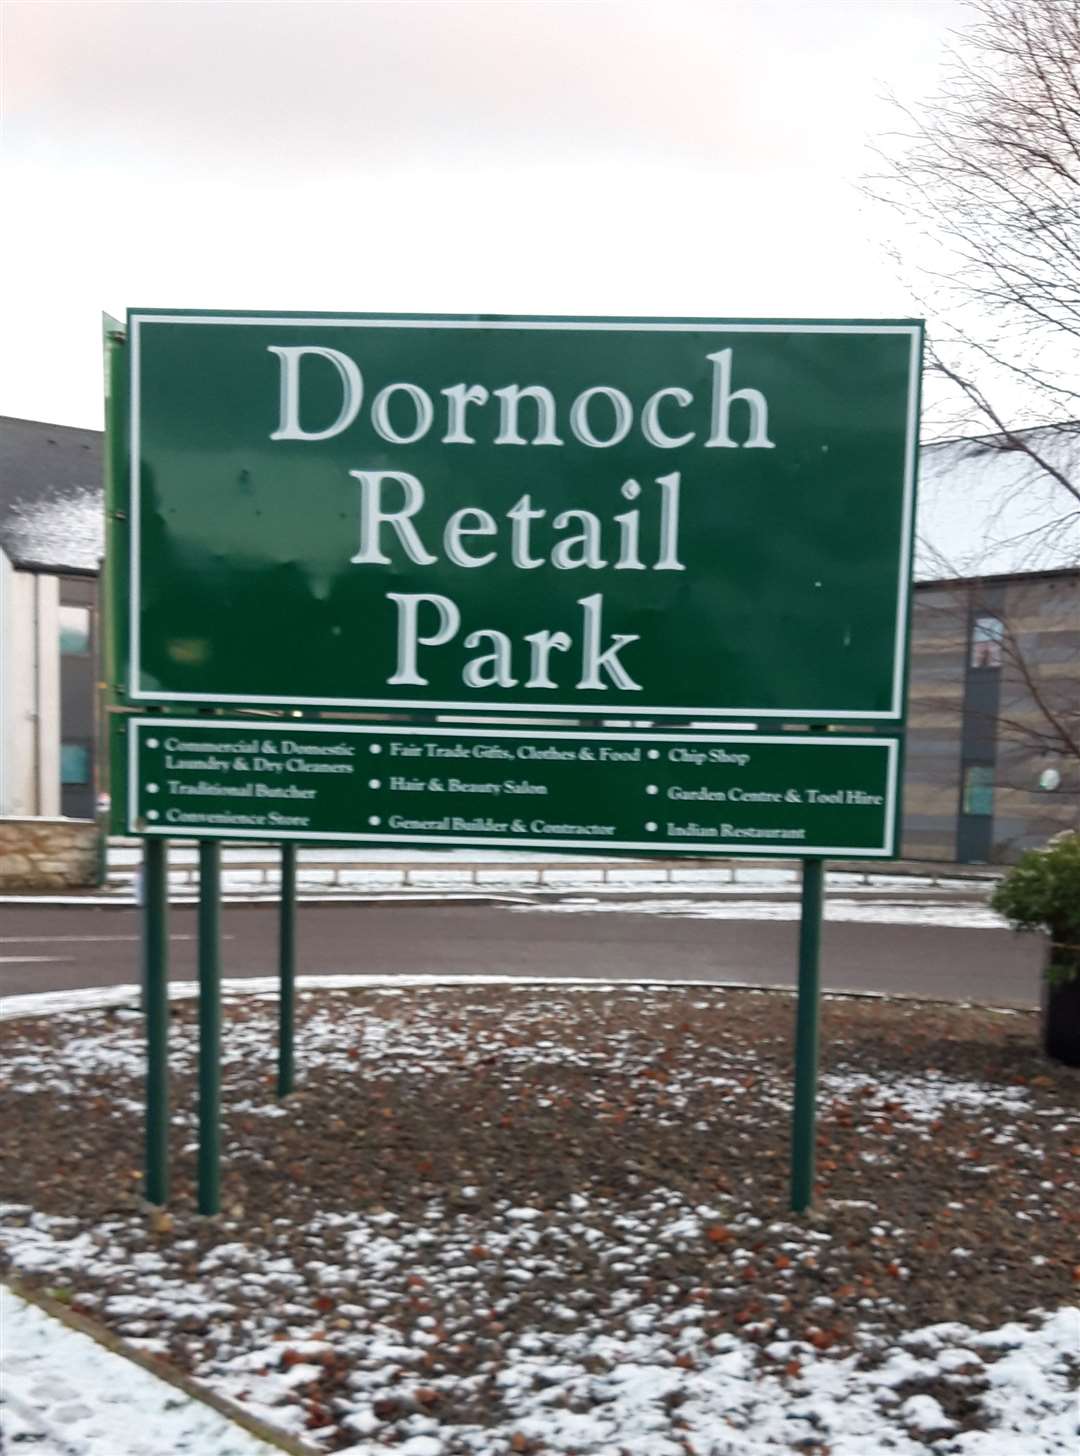 Dornoch Retail Park.